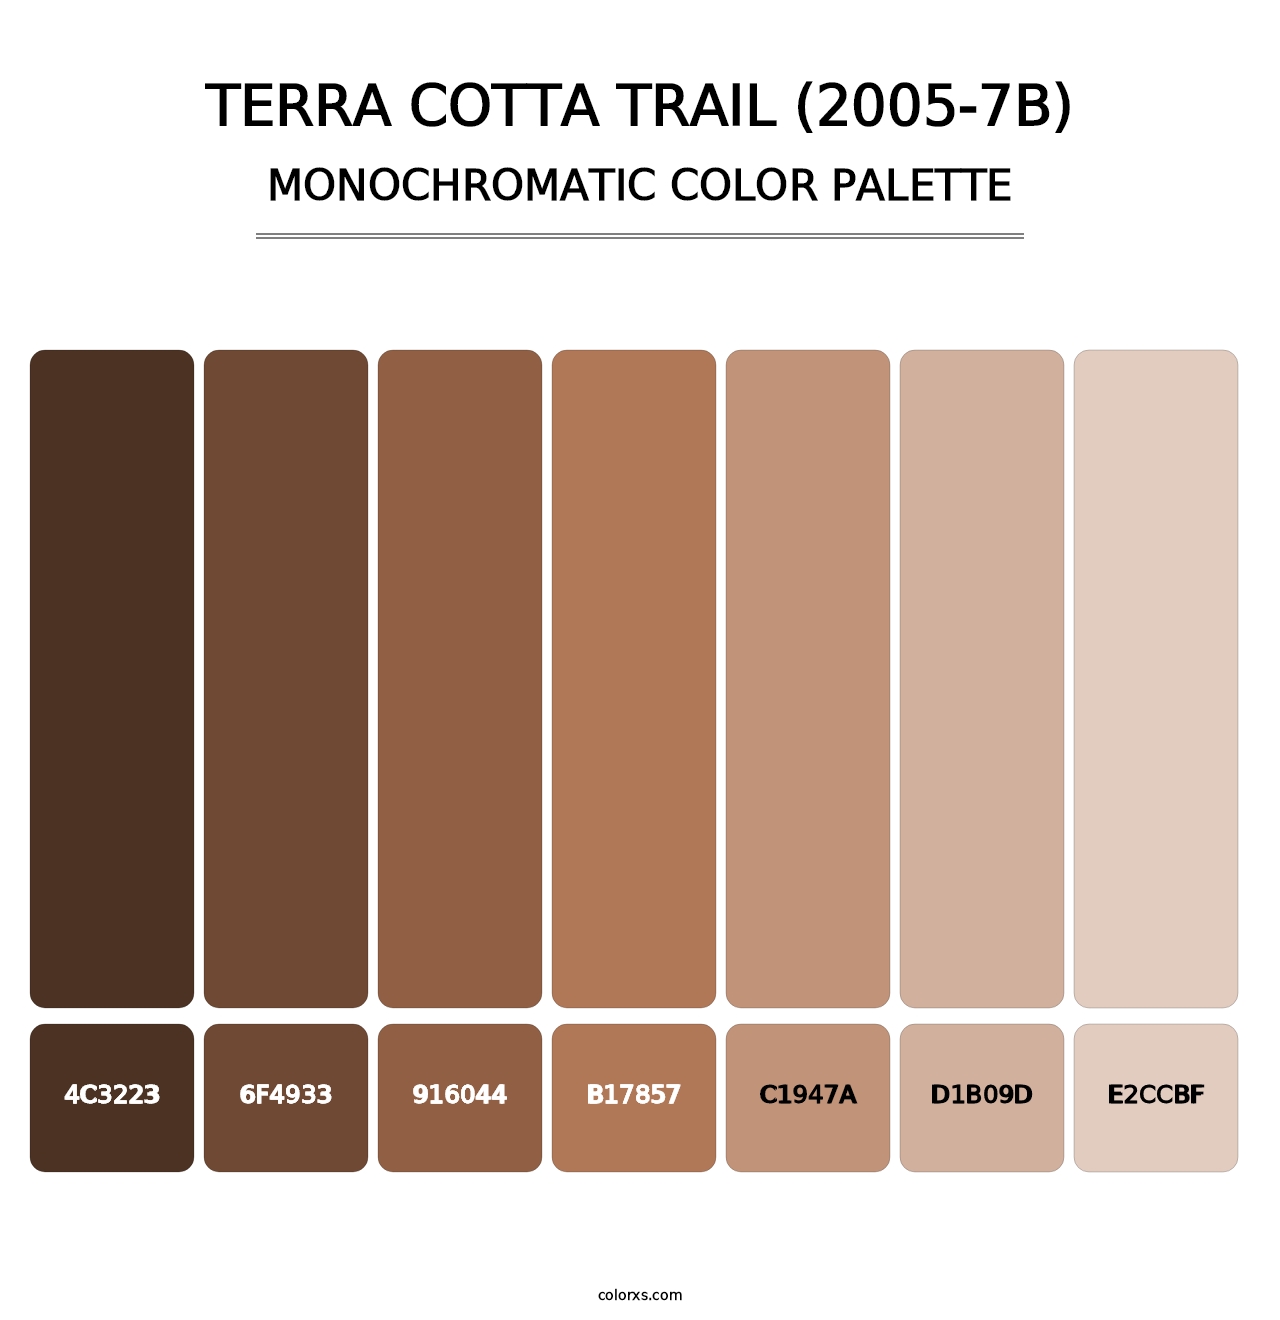 Terra Cotta Trail (2005-7B) - Monochromatic Color Palette